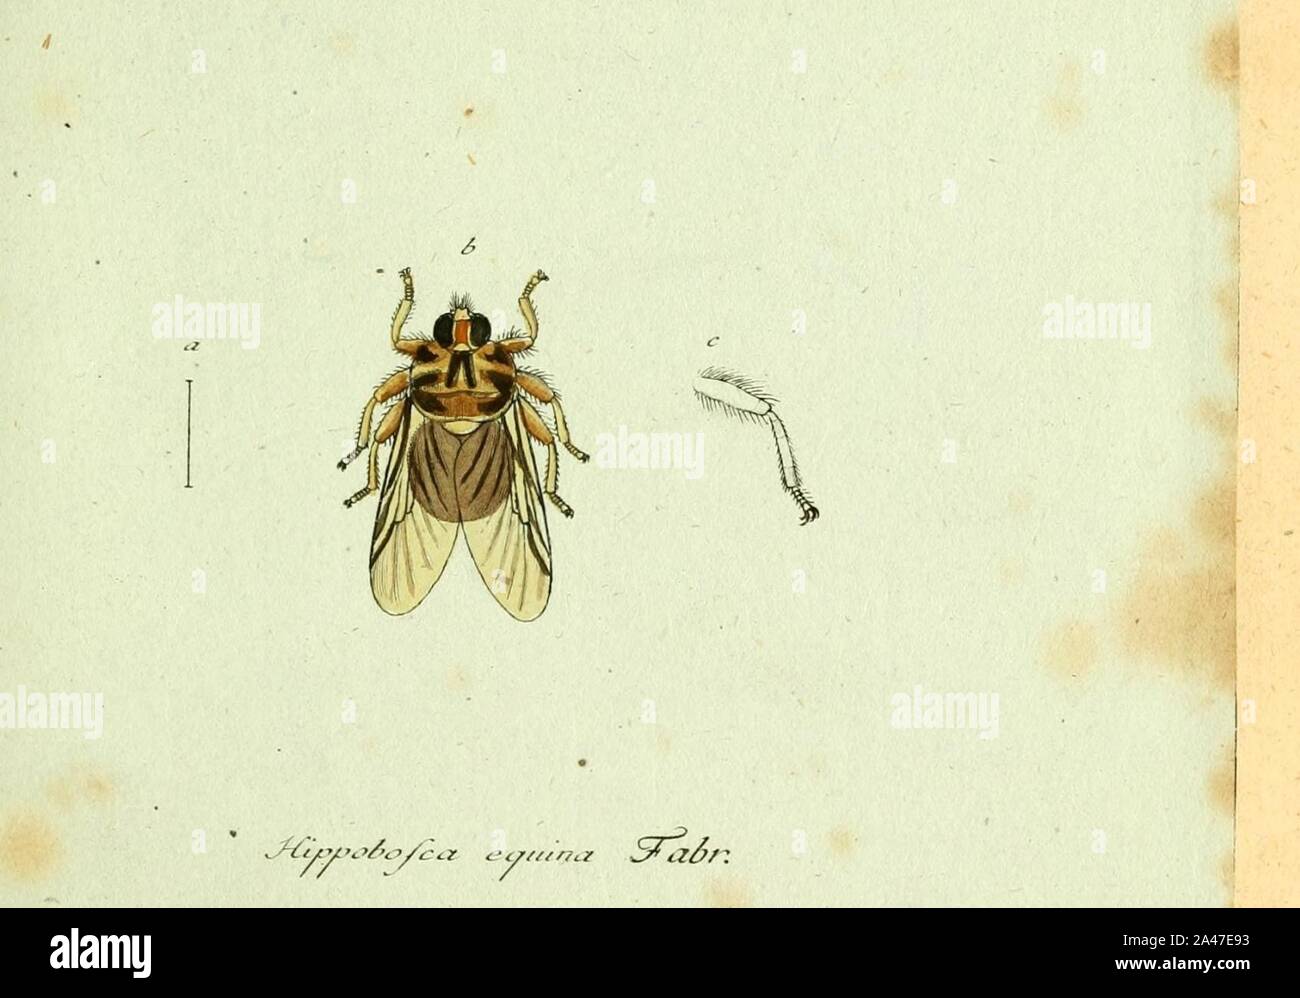 Fauna Germanica, Diptera 1793, vol.1, p66, Hippobosca equina Fabr.. Stock Photo